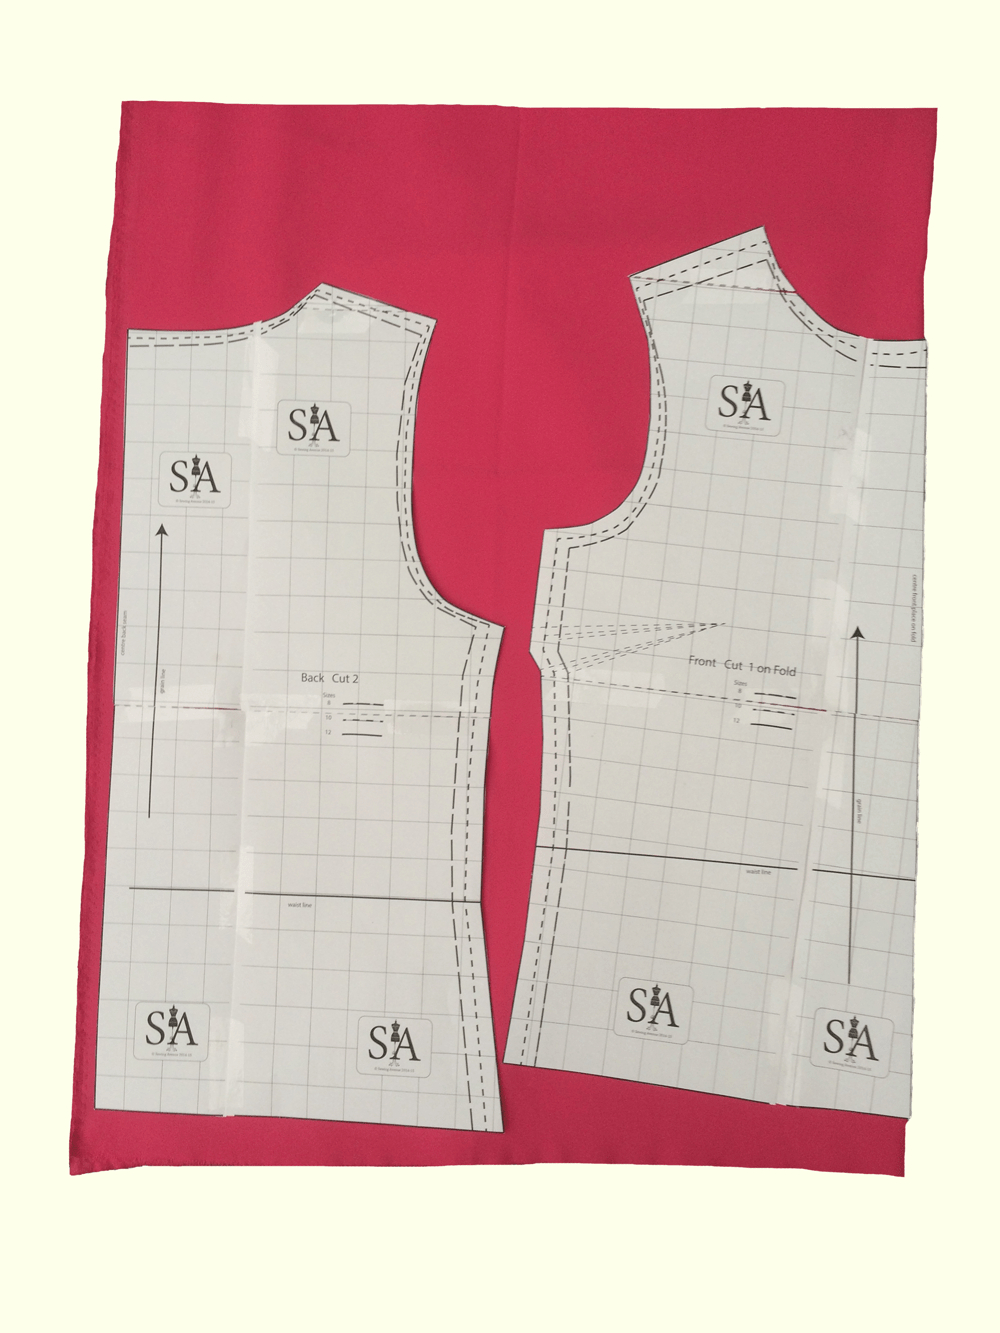 Free Download Sewing Patterns Pdf - Sewing Avenue - Free Printable Sewing Patterns Pdf